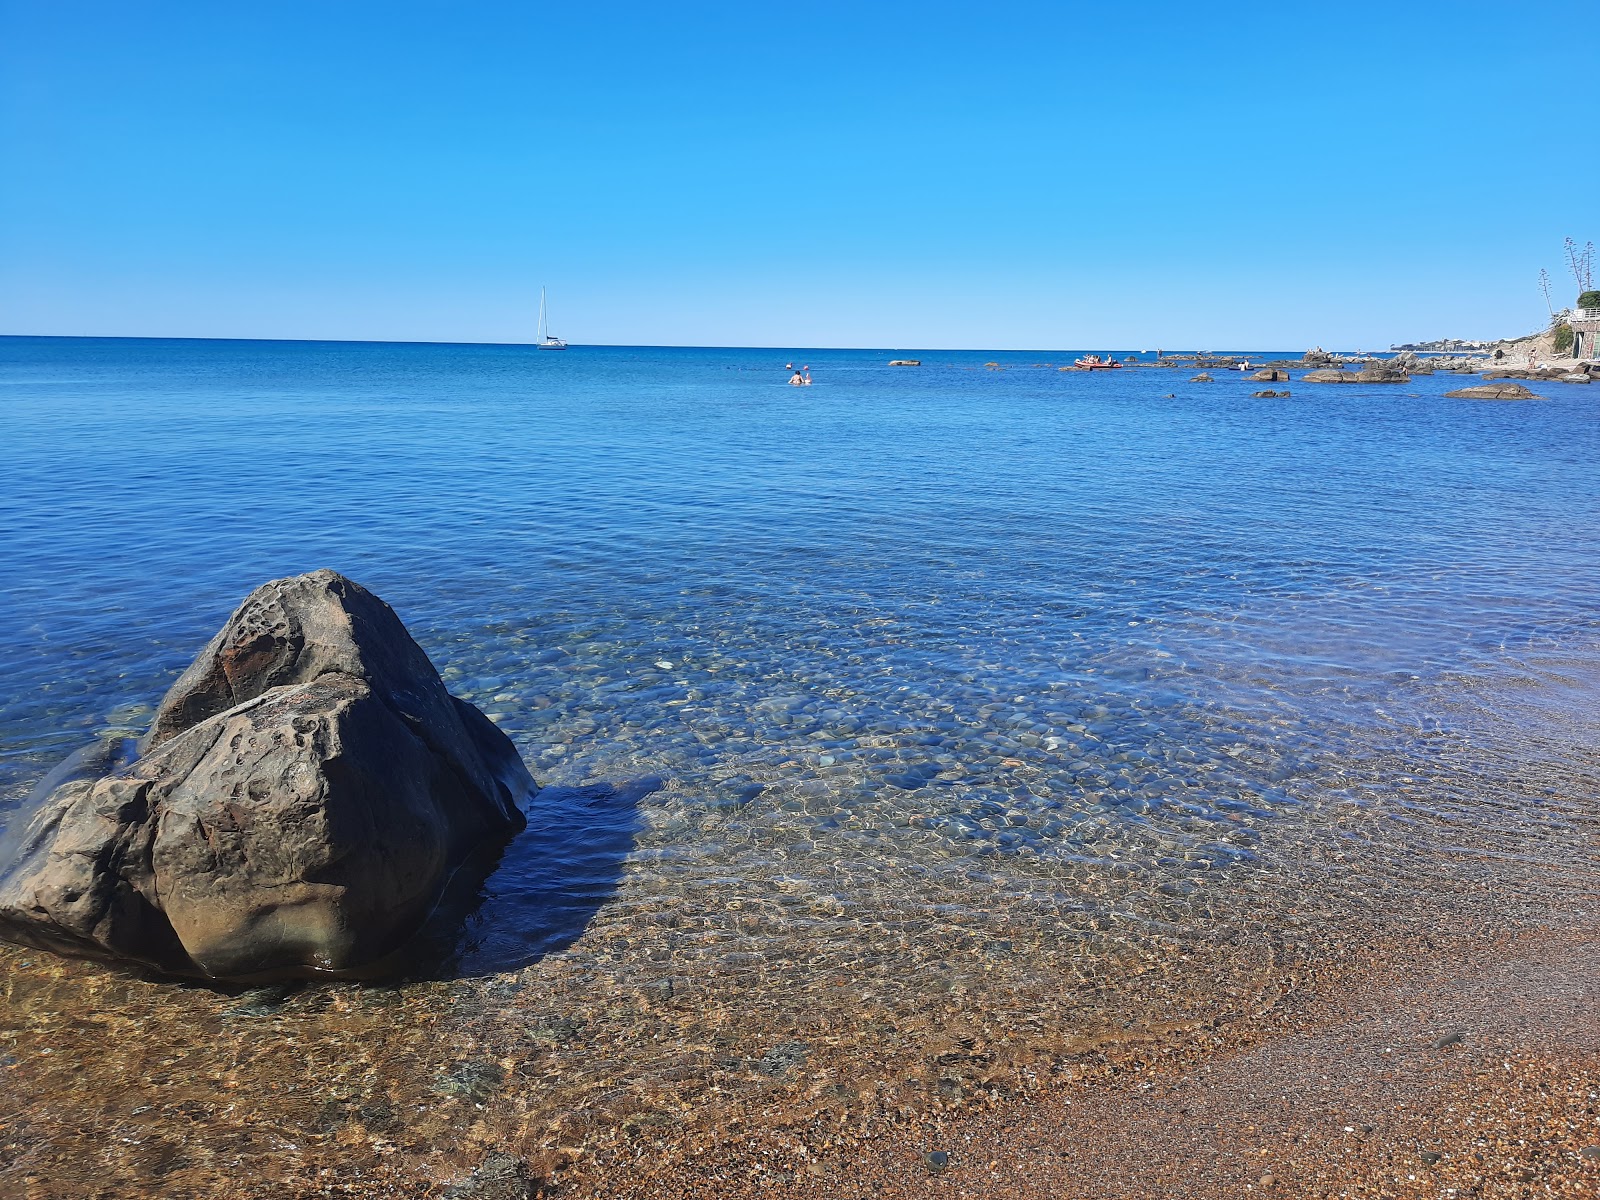 Photo of La spiaggia bella with gray fine pebble surface